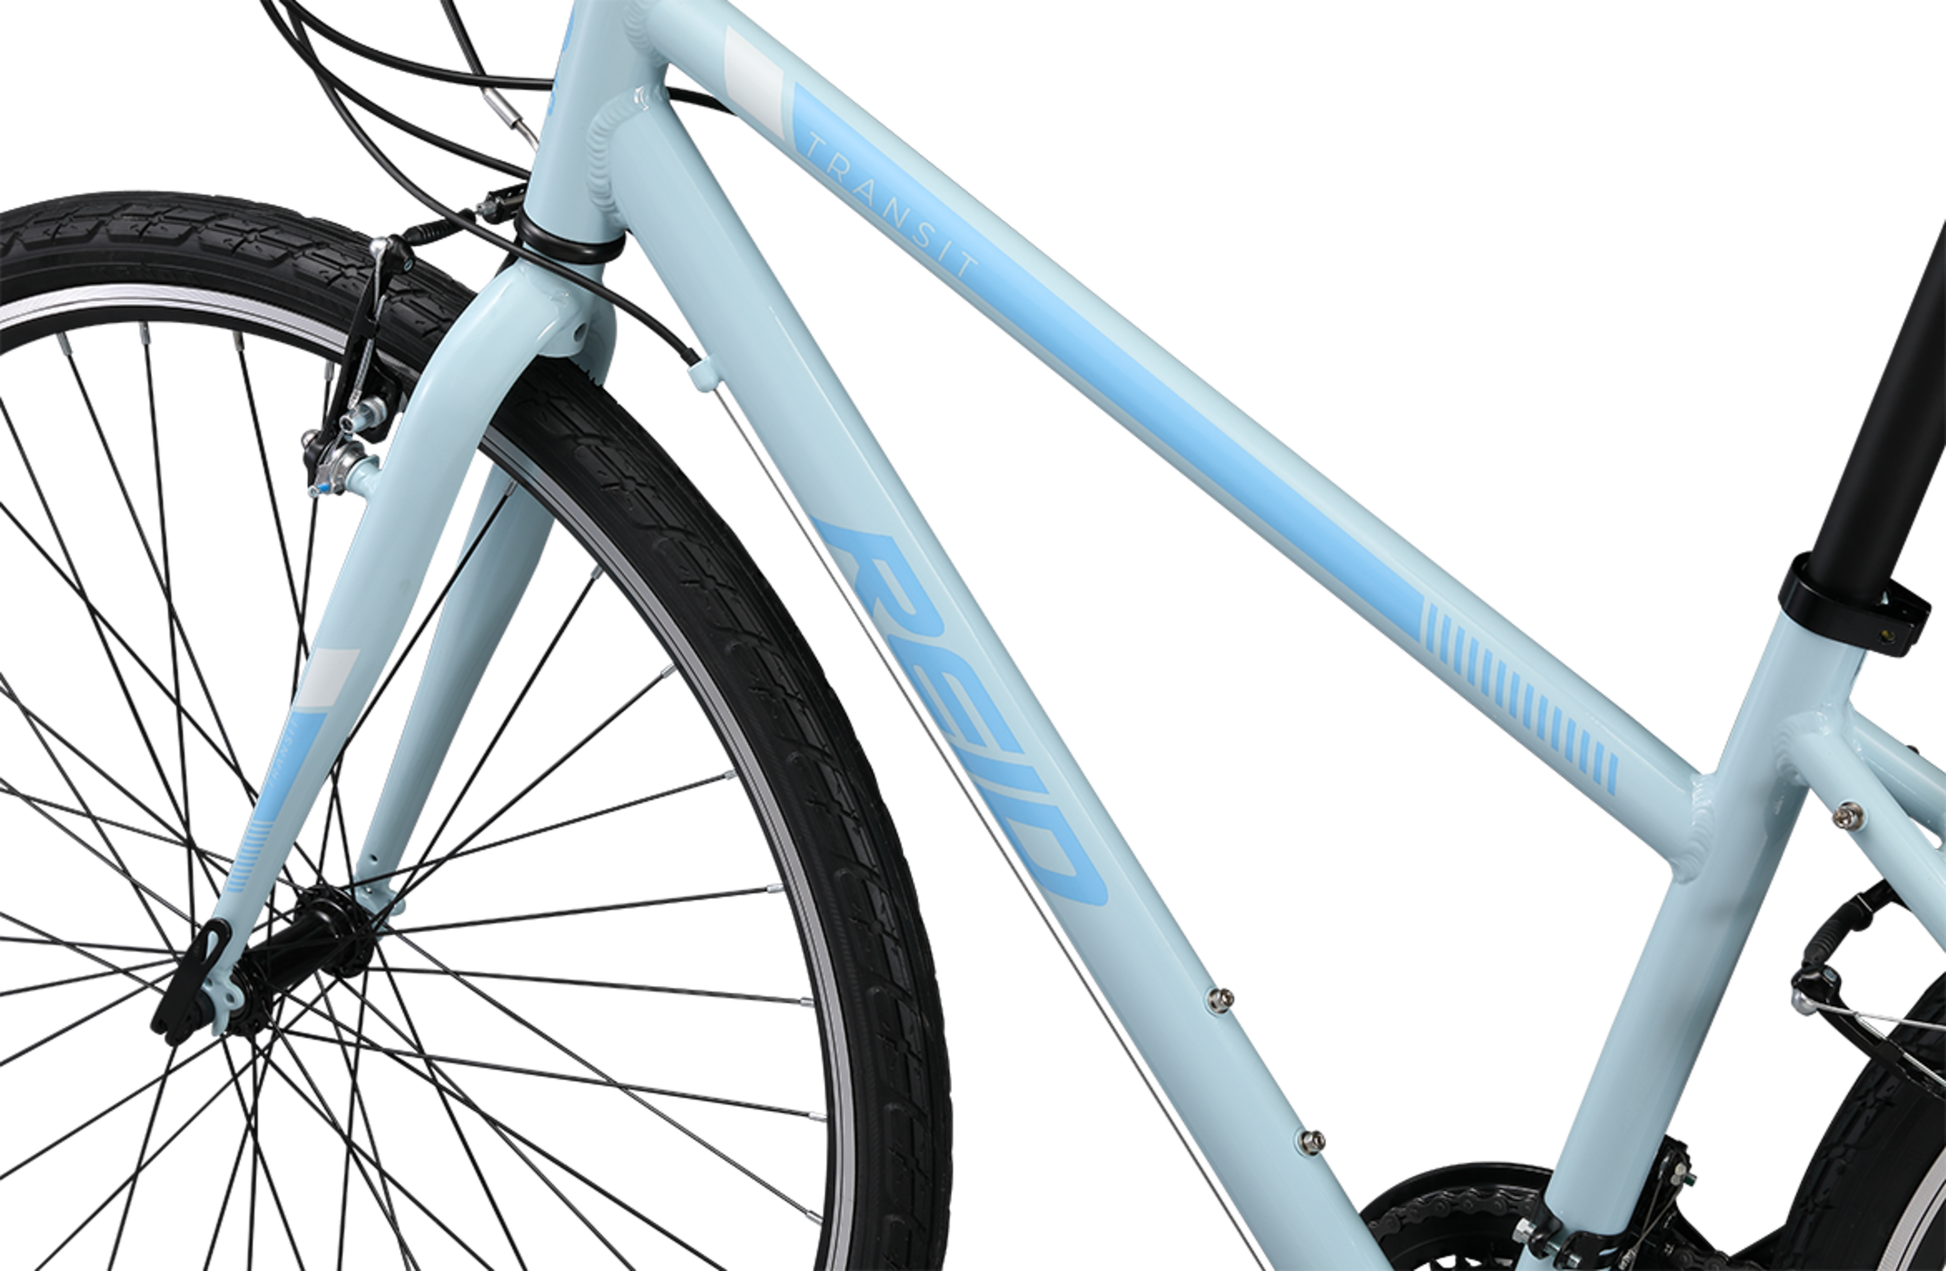 Transit WSD women's commuter bike in baby blue showing Reid logo on bike frame from Reid Cycles Australia